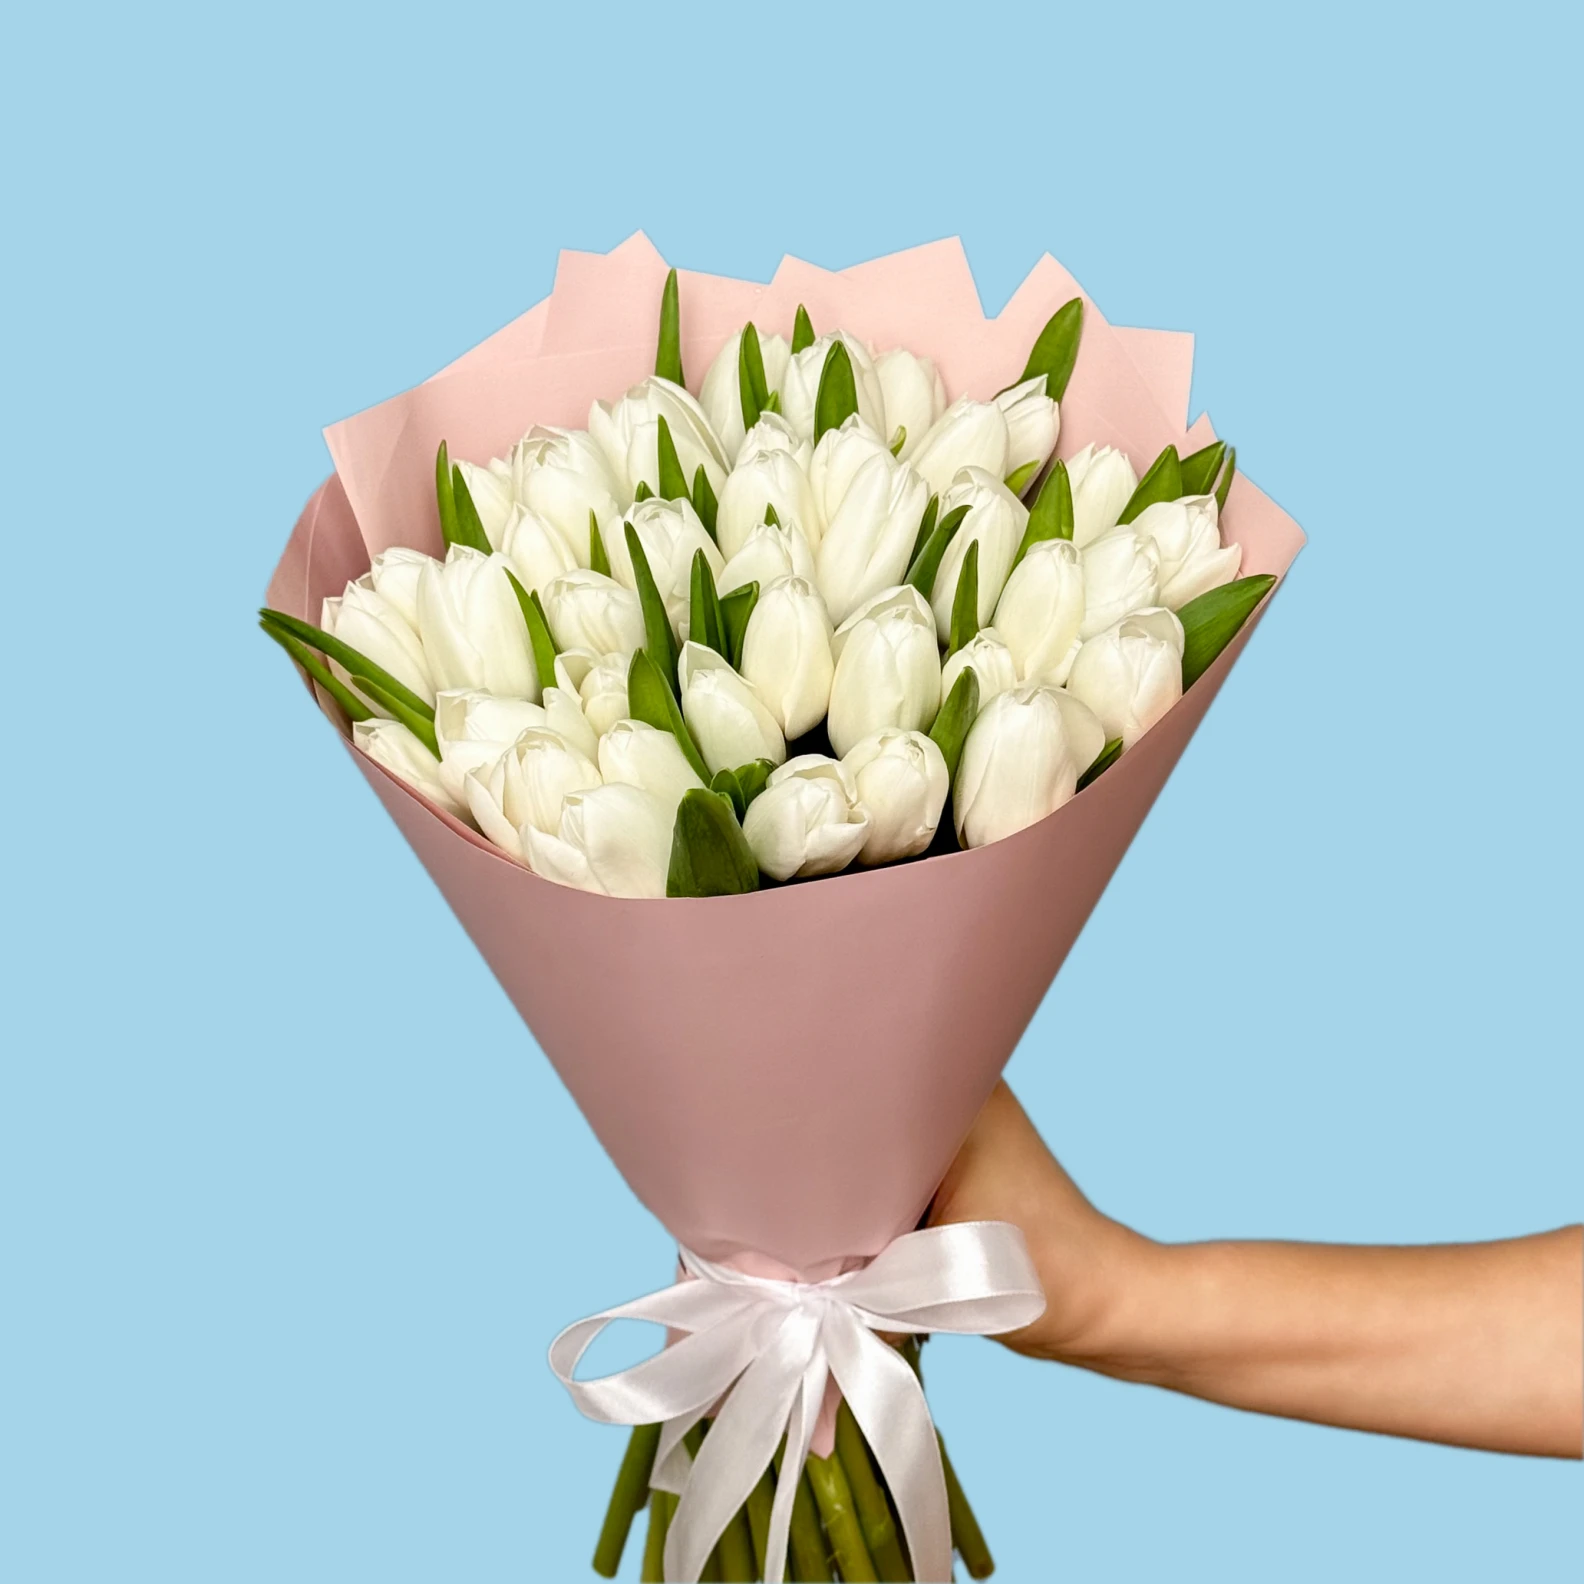 40 White Tulips - image №2